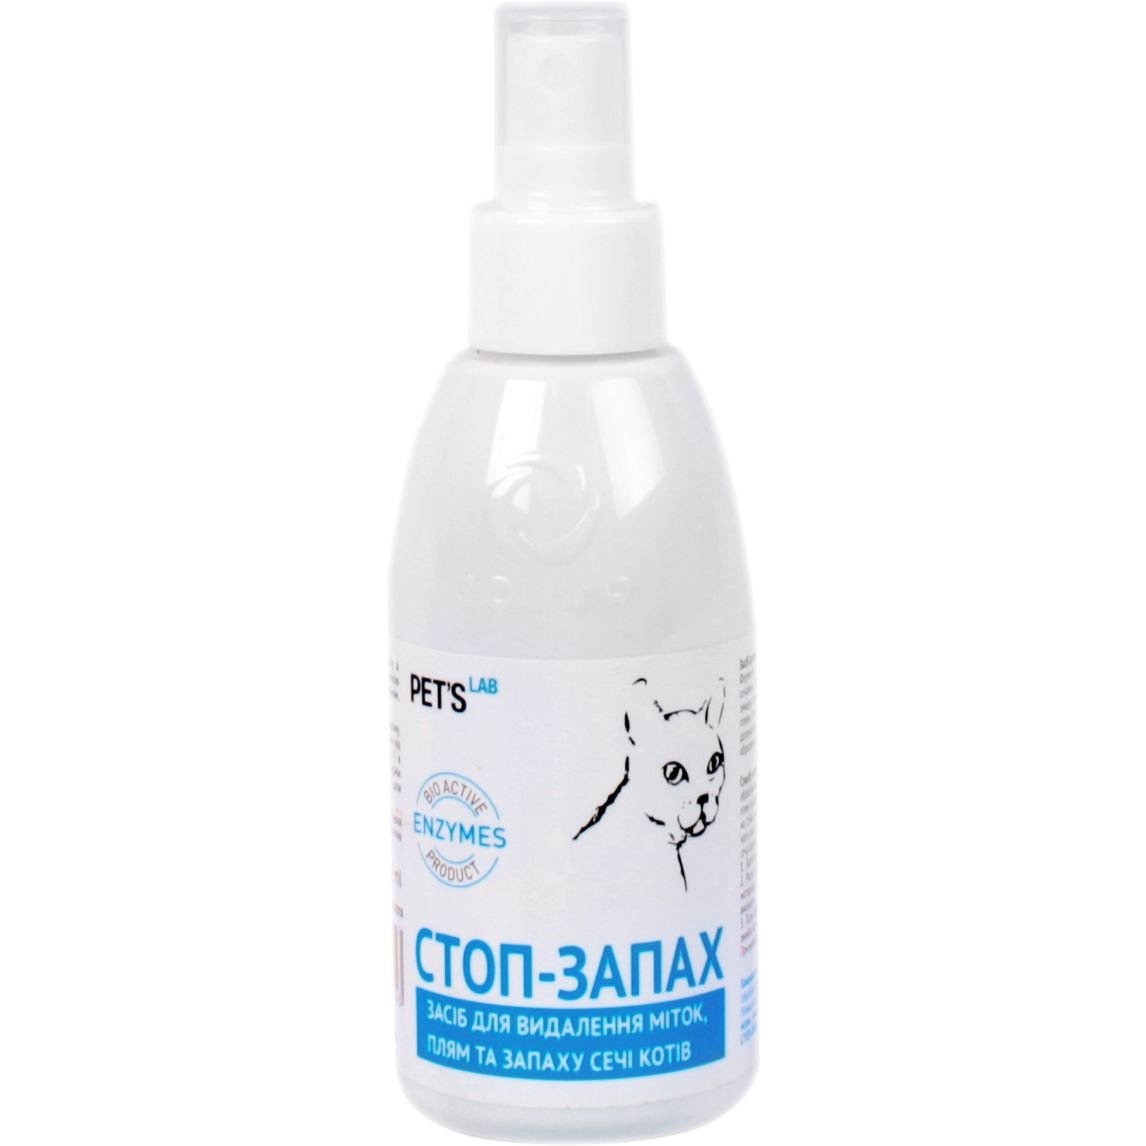 Photos - Stain Remover Засіб для усунення плям та запаху сечі котів Pet's Lab Стоп-запах, 300 мл